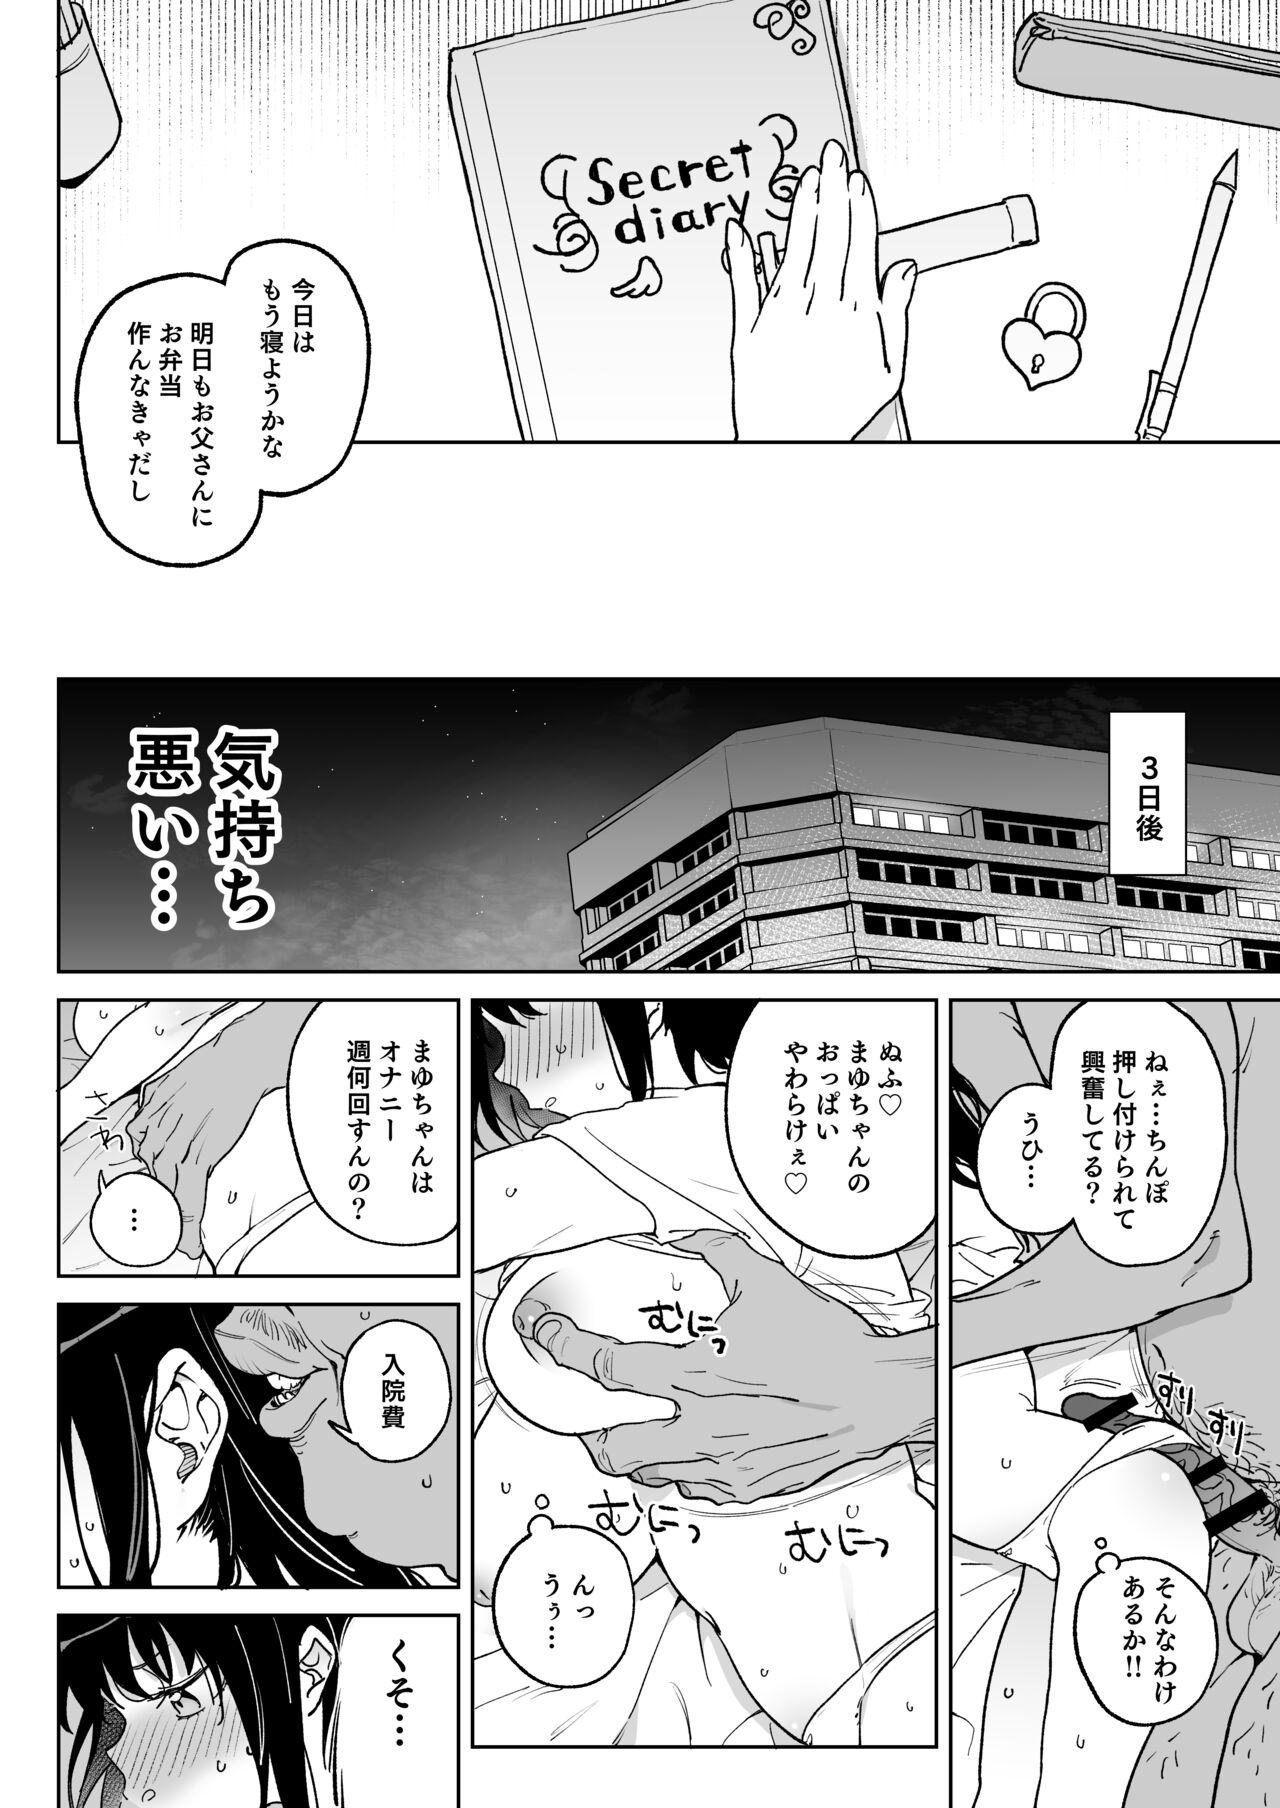 Gaybukkake [Meshikutteneru. (Atage)] 11-gatsu 28-kai Atarashii Papa no Mono ni Narimashita. [Digital] - Original Stripping - Page 3